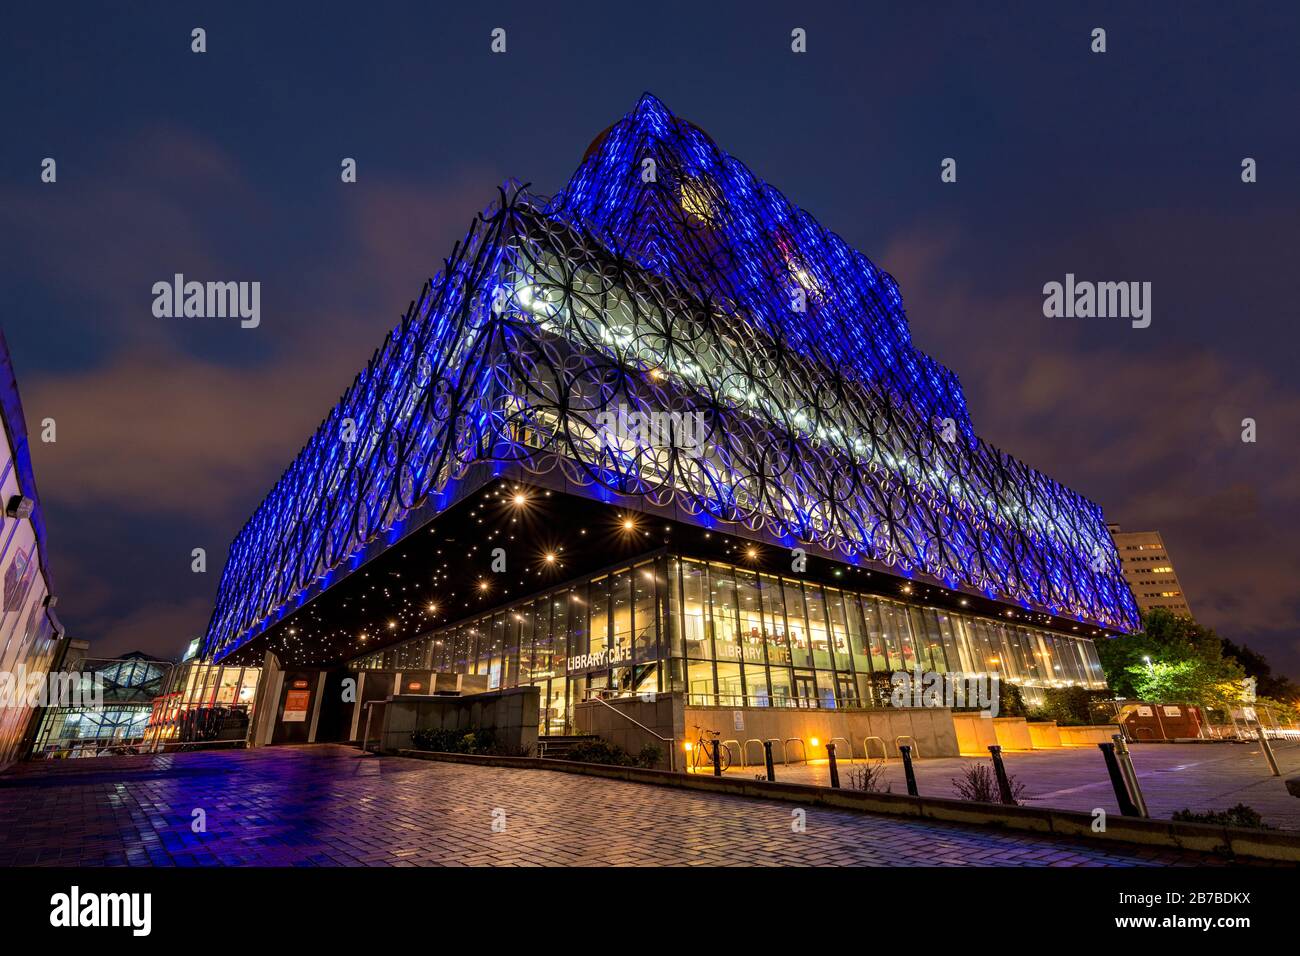 La biblioteca illuminata di Birmingham di notte con la sua architettura interessante Foto Stock